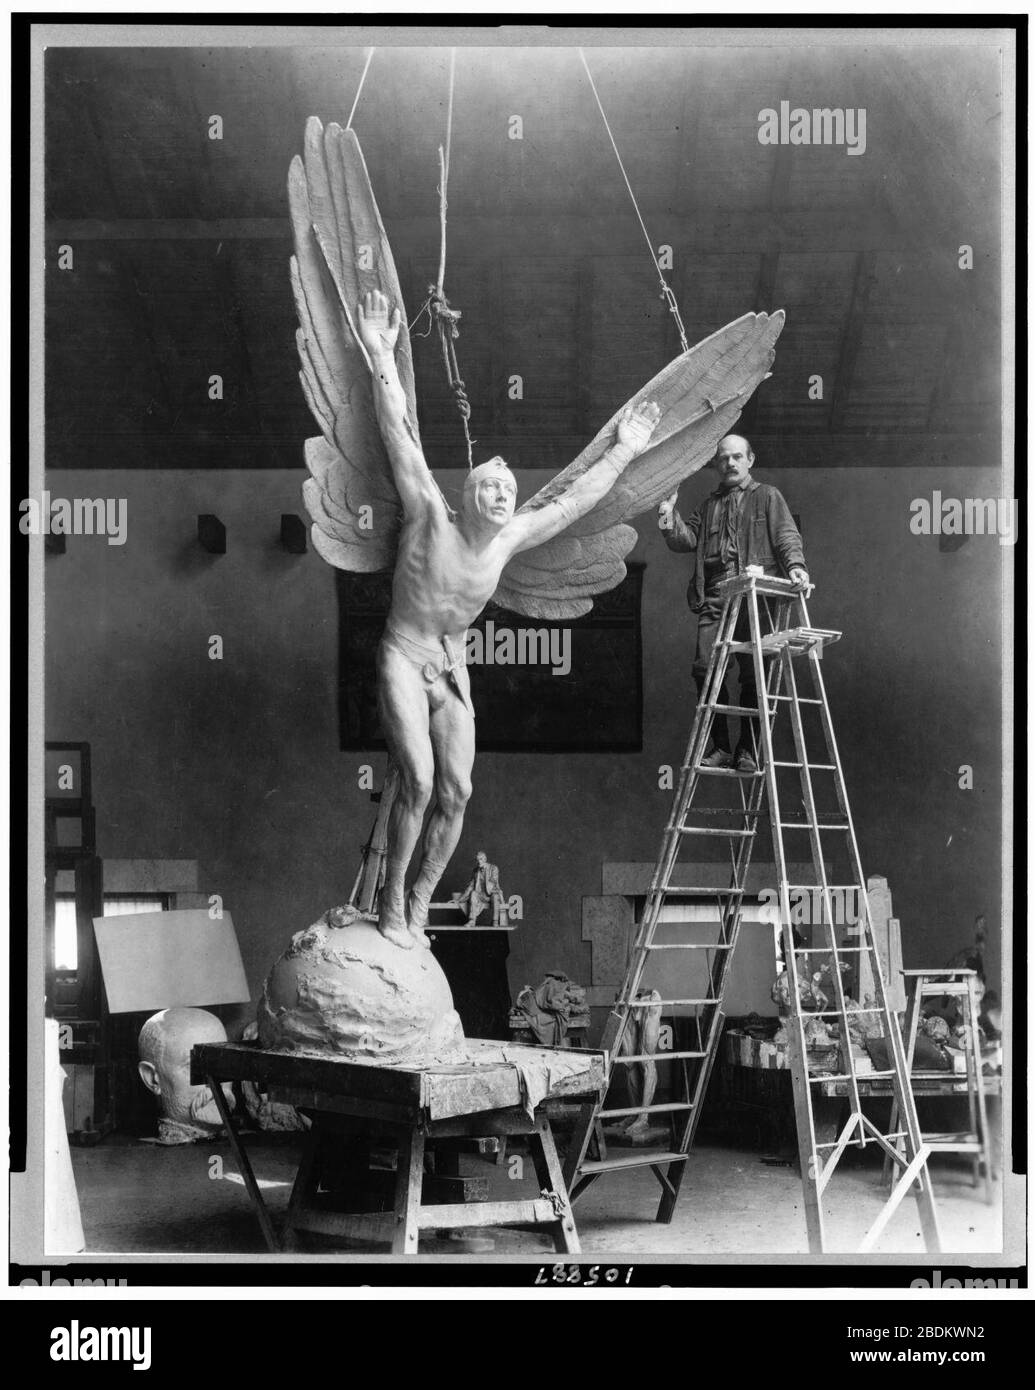 Gutzon Borglum, sculpteur, portrait sur toute la longueur, debout sur l'échelle, aux côtés de sa sculpture, Statue d'aviateur, face légèrement à gauche Banque D'Images